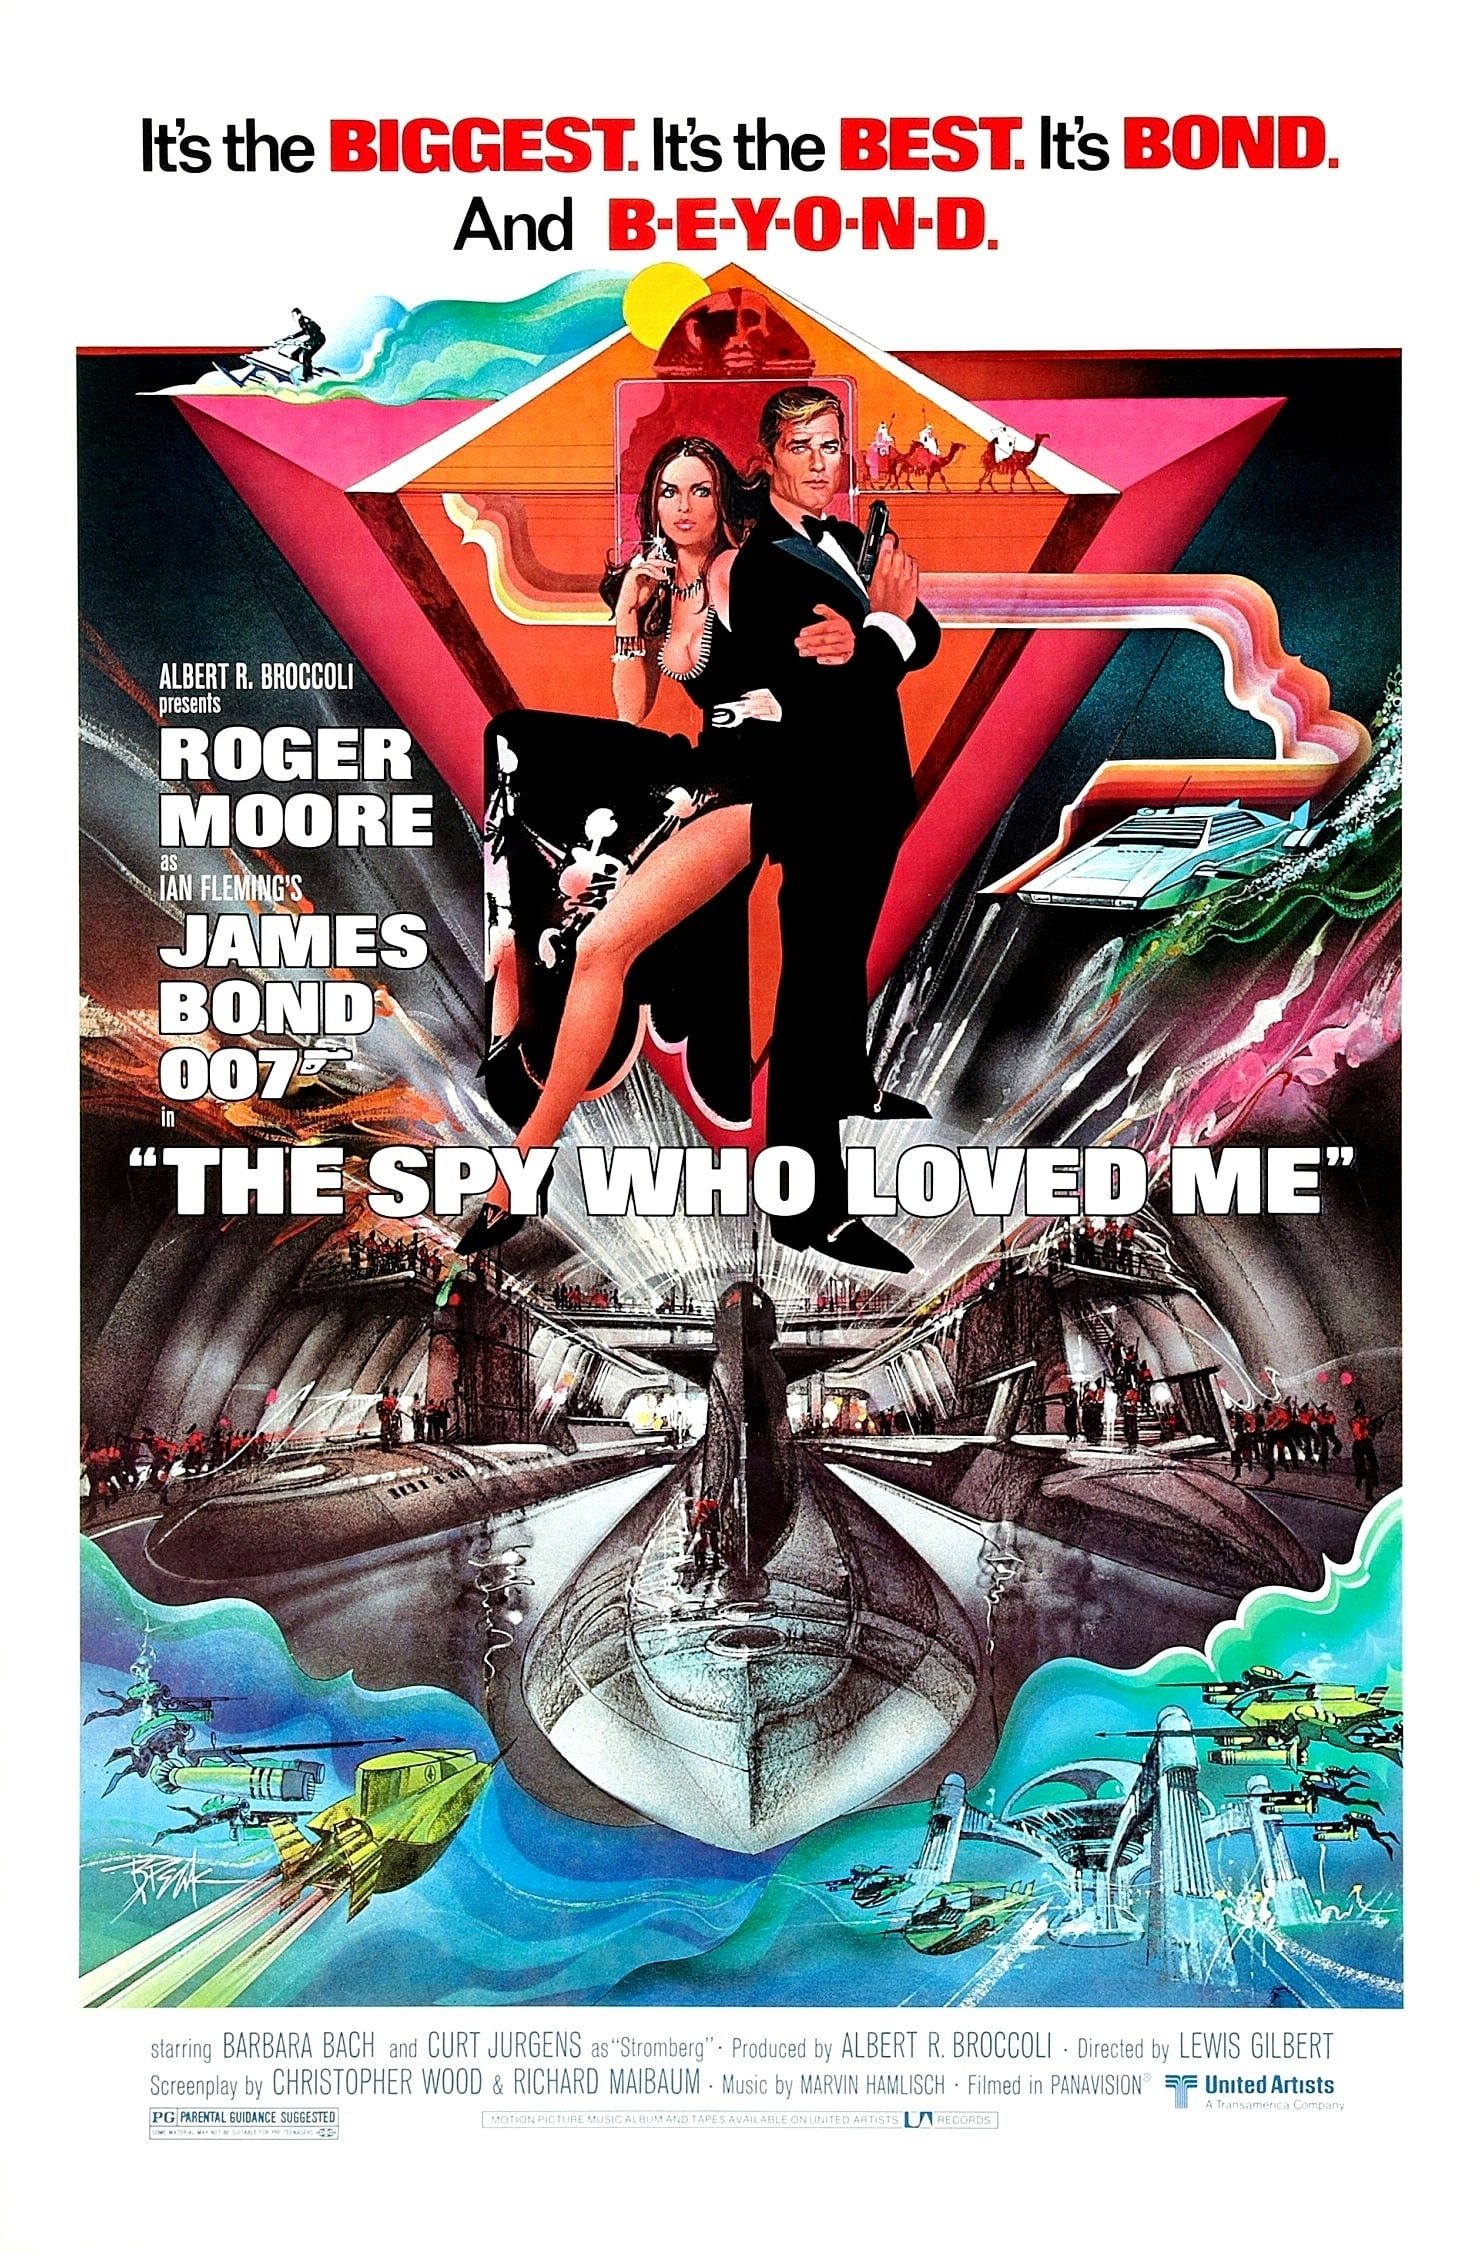 Bondcast 2.0 - 10 - The Spy Who Loved Me (1977)